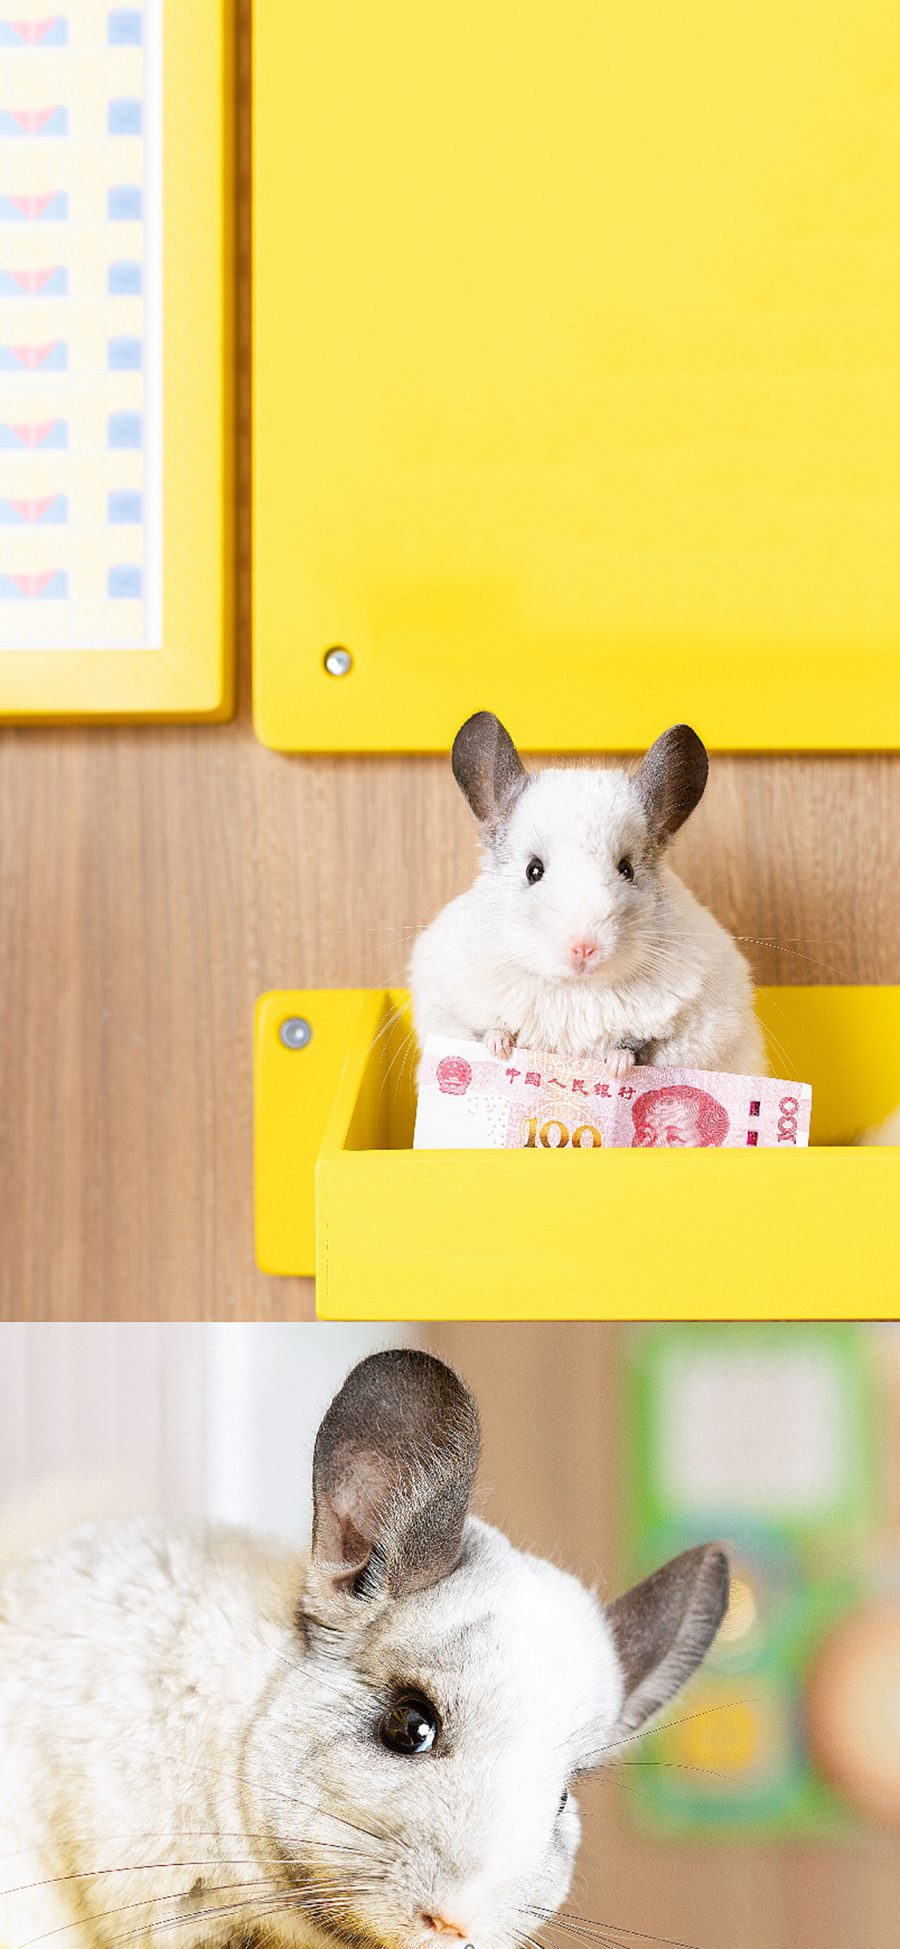 [2436×1125]宠物 鼠科 龙猫 白色 摄影师刘师岐 苹果手机壁纸图片